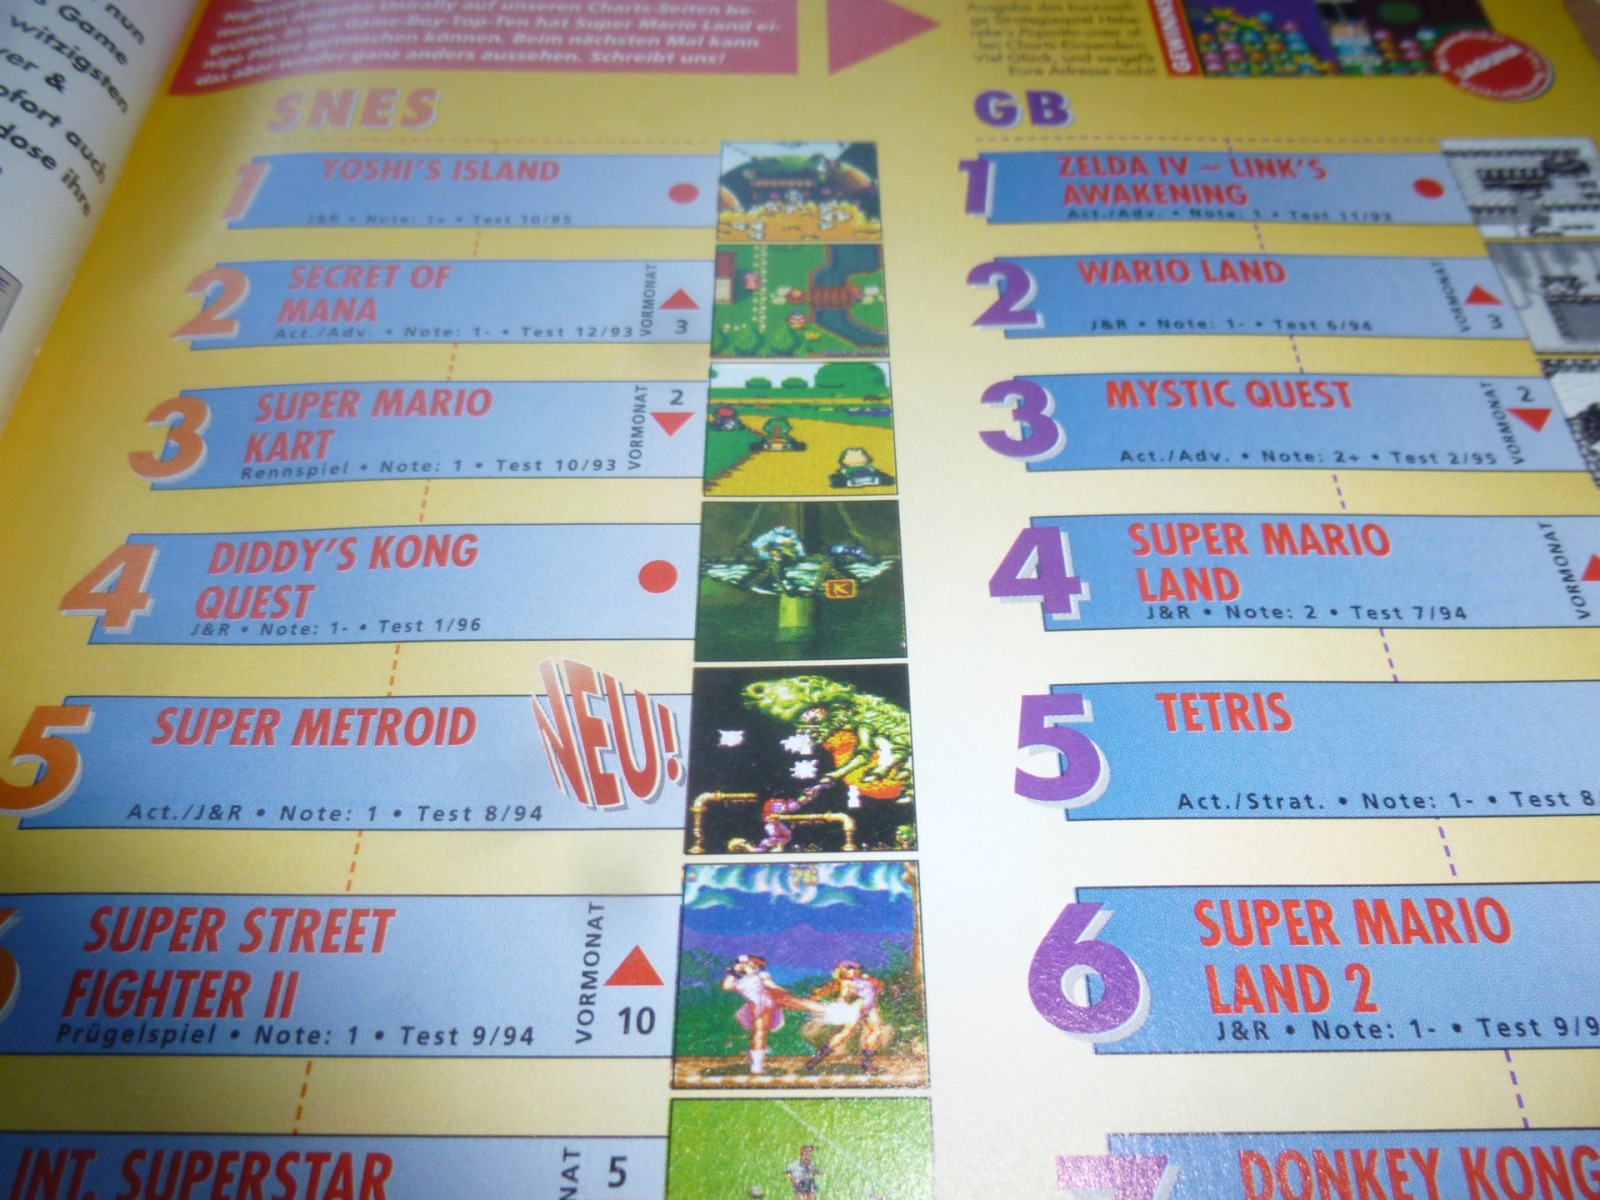 TOTAL Das unabhängige Magazin - 100 Nintendo - Ausgabe 10/96 1996 16